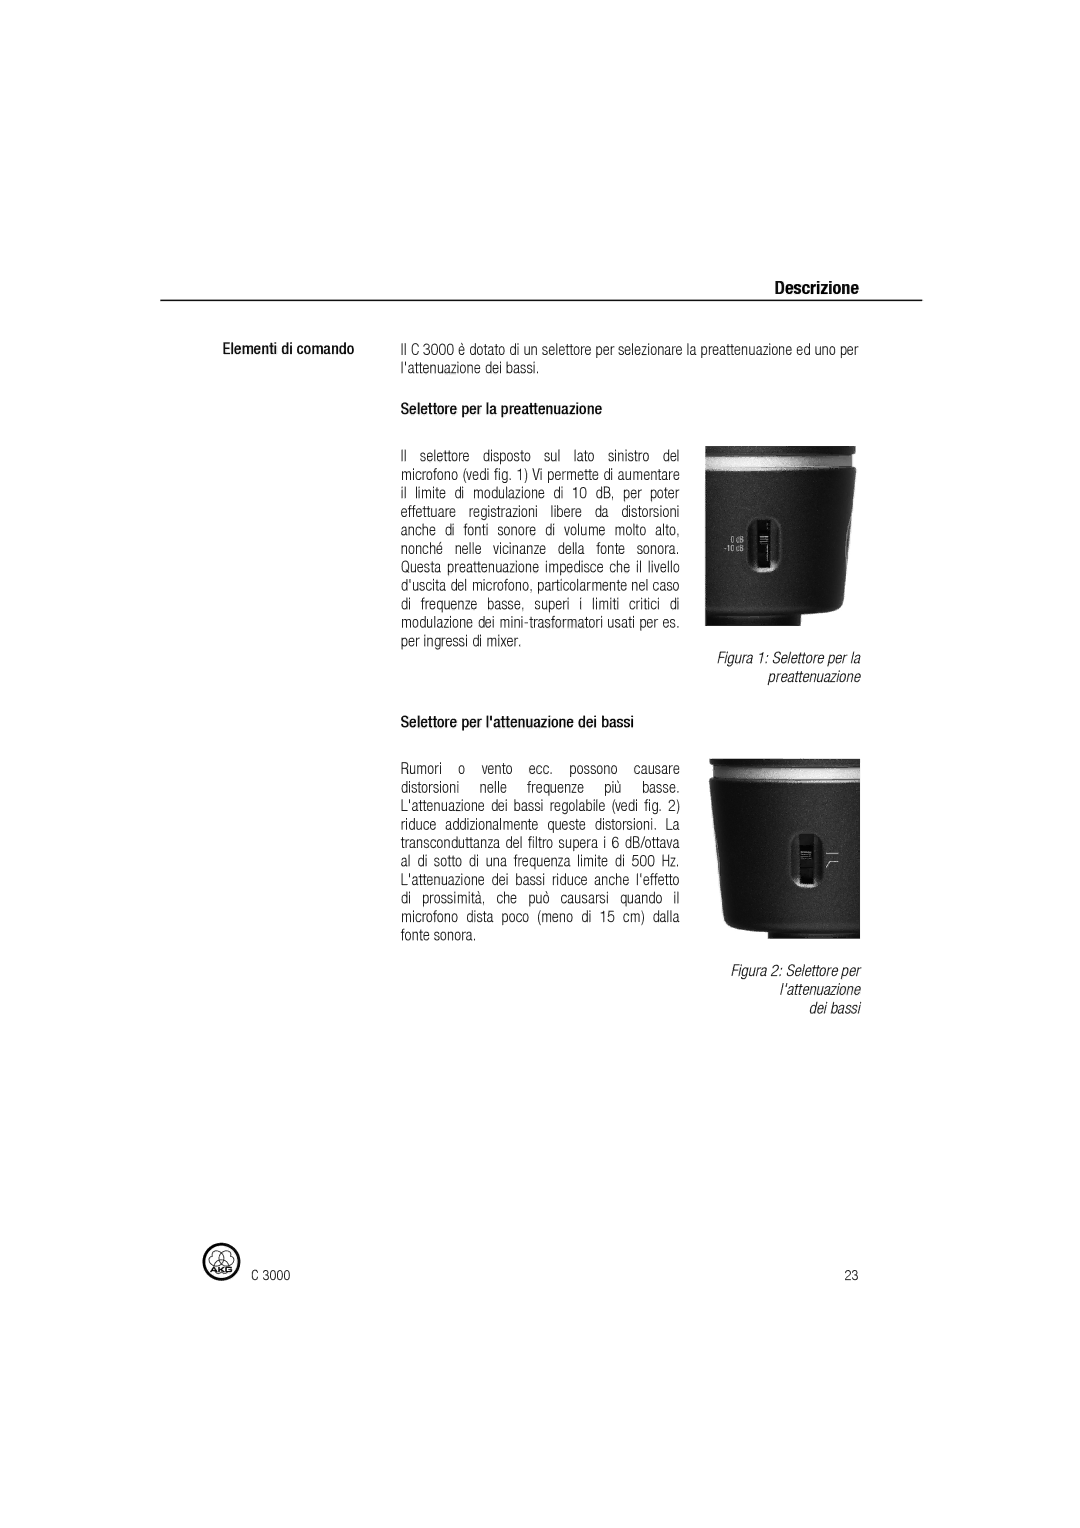 AKG Acoustics C 3000 manual Selettore per lattenuazione dei bassi, Figura 1 Selettore per la preattenuazione 